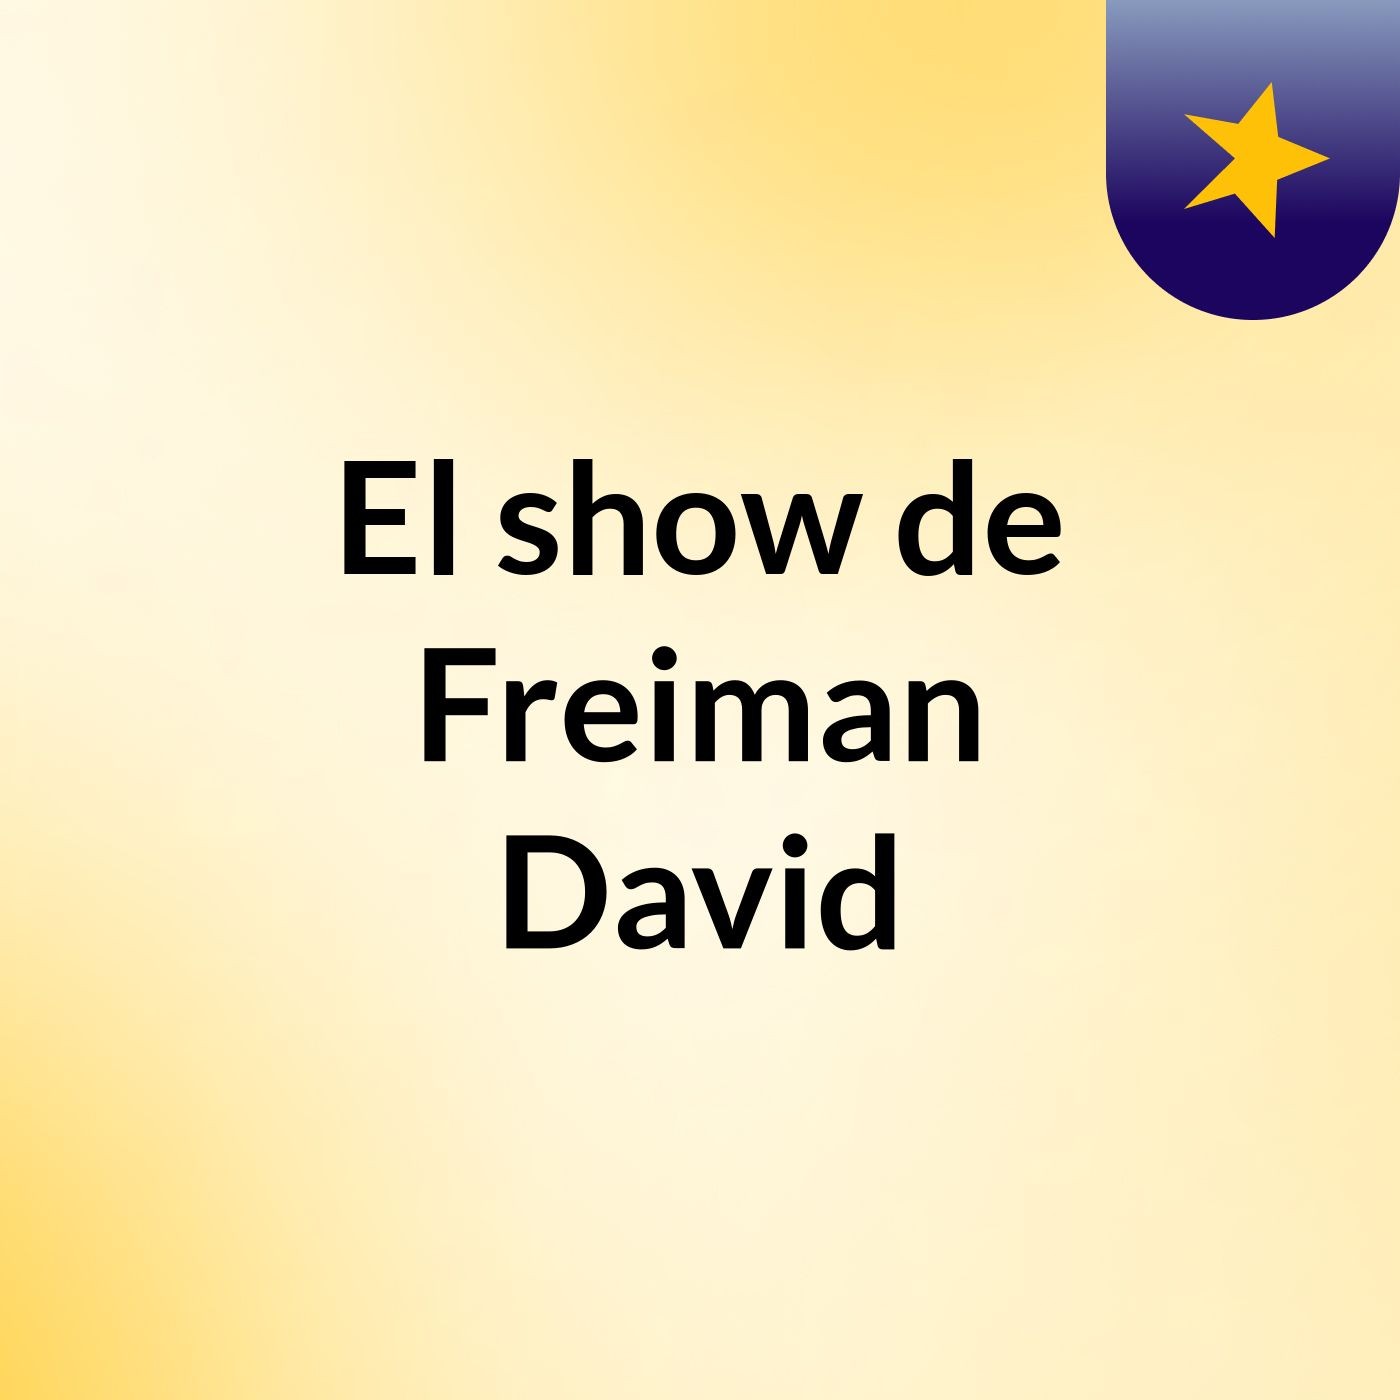 El show de Freiman David